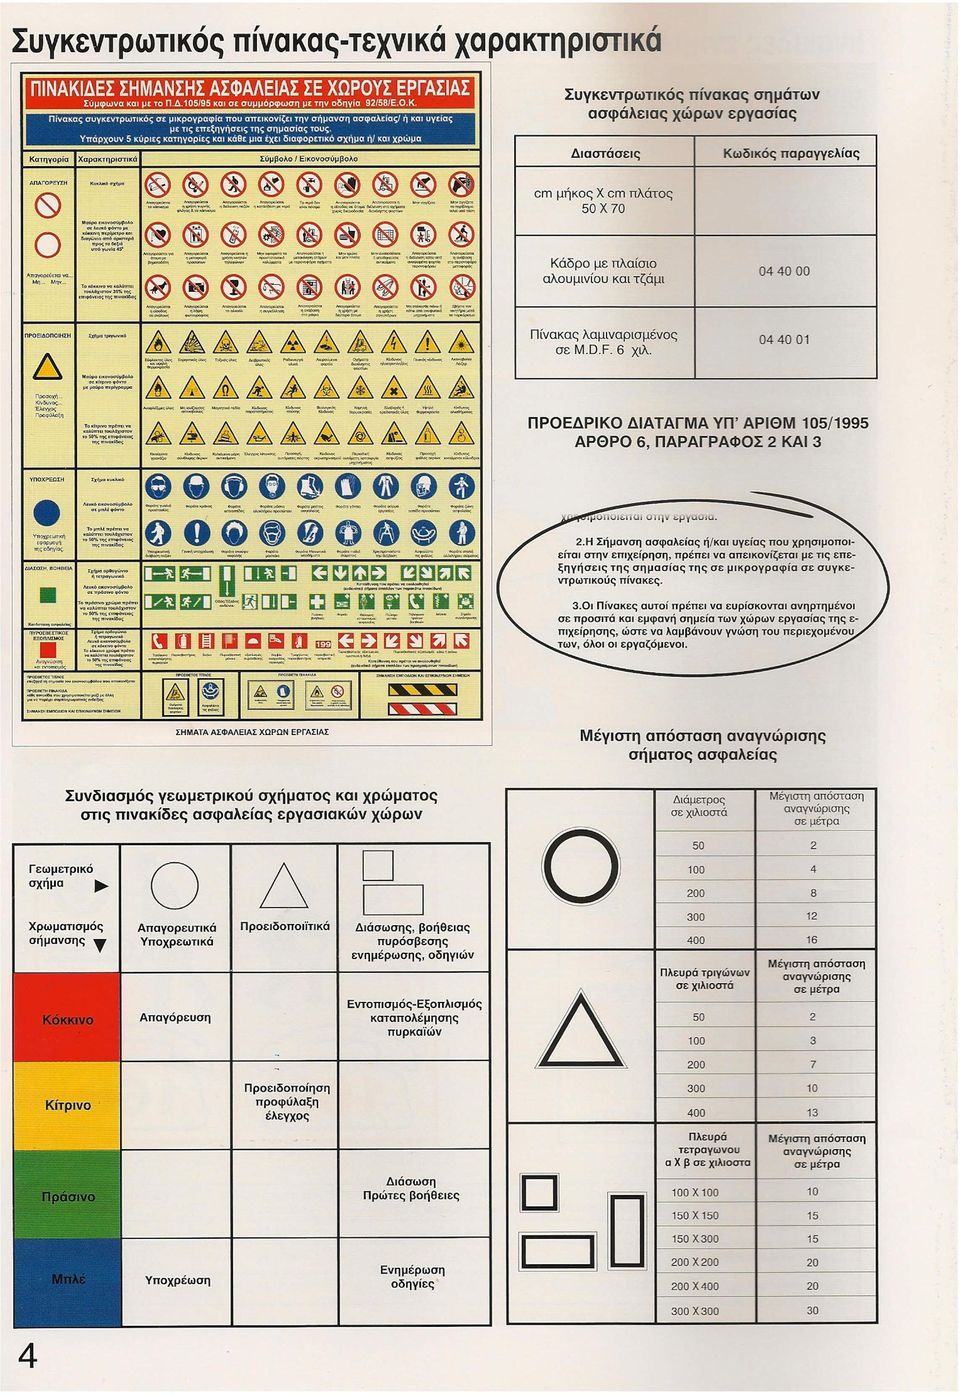 Υπάρχουν 5 κύριες ΚΩτηγορlες και κάθε μια εχει διαφορετικό σχημα ηl και χρώμα Κατηγορία χαρακτηριστικά Σύμβολο Εικονοσύμβολο Συγκεντρωτικός πίνακας σημάτων ασφάλειας χώρων εργασίας Διαστάσεις Κωδικός